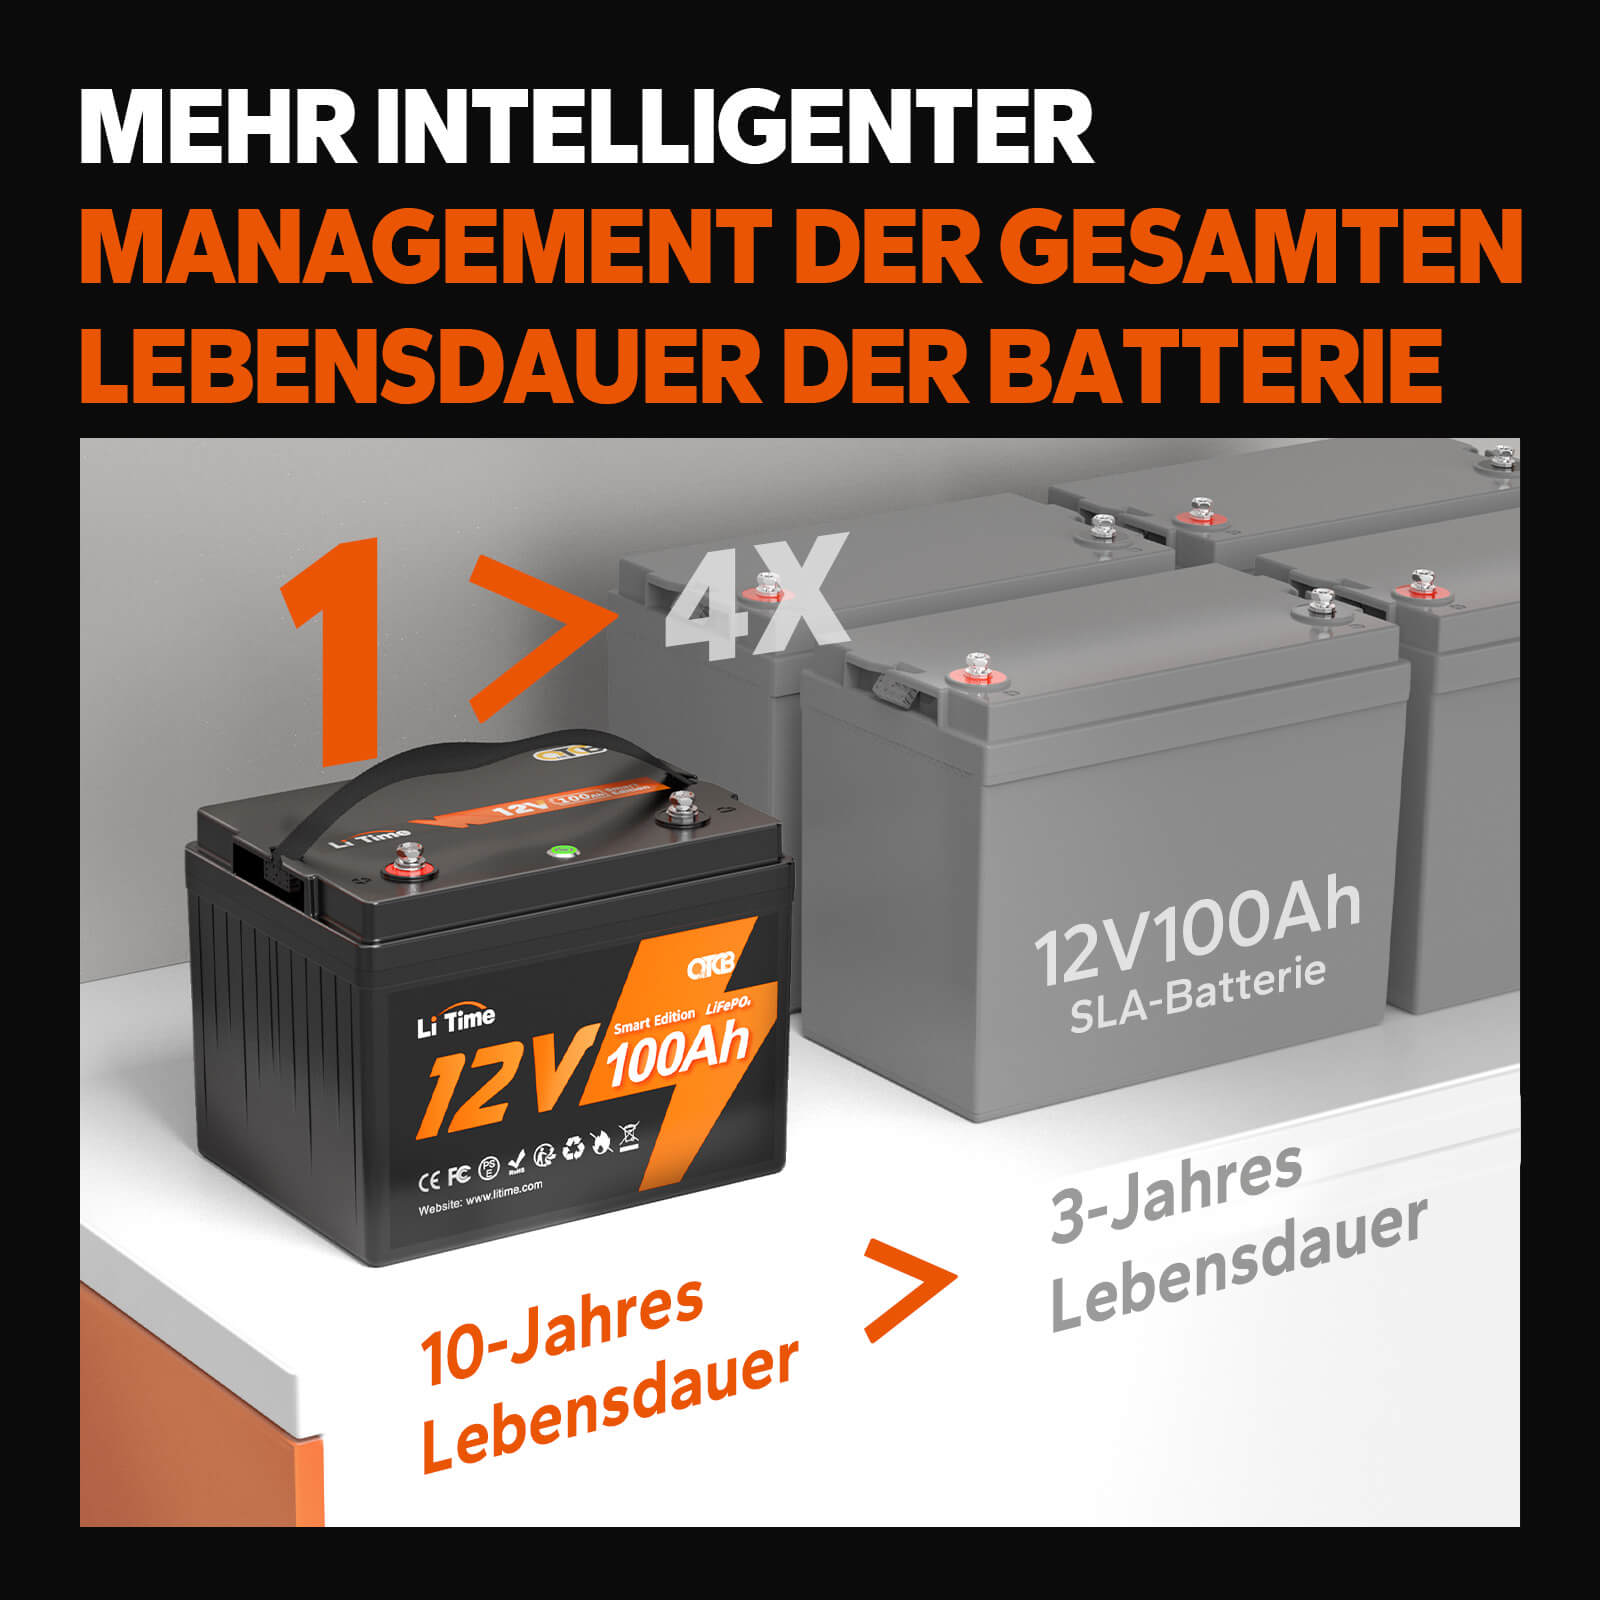 【0% MwSt.】LiTime 12V 100Ah Smart Lithium LiFePO4 Batterie